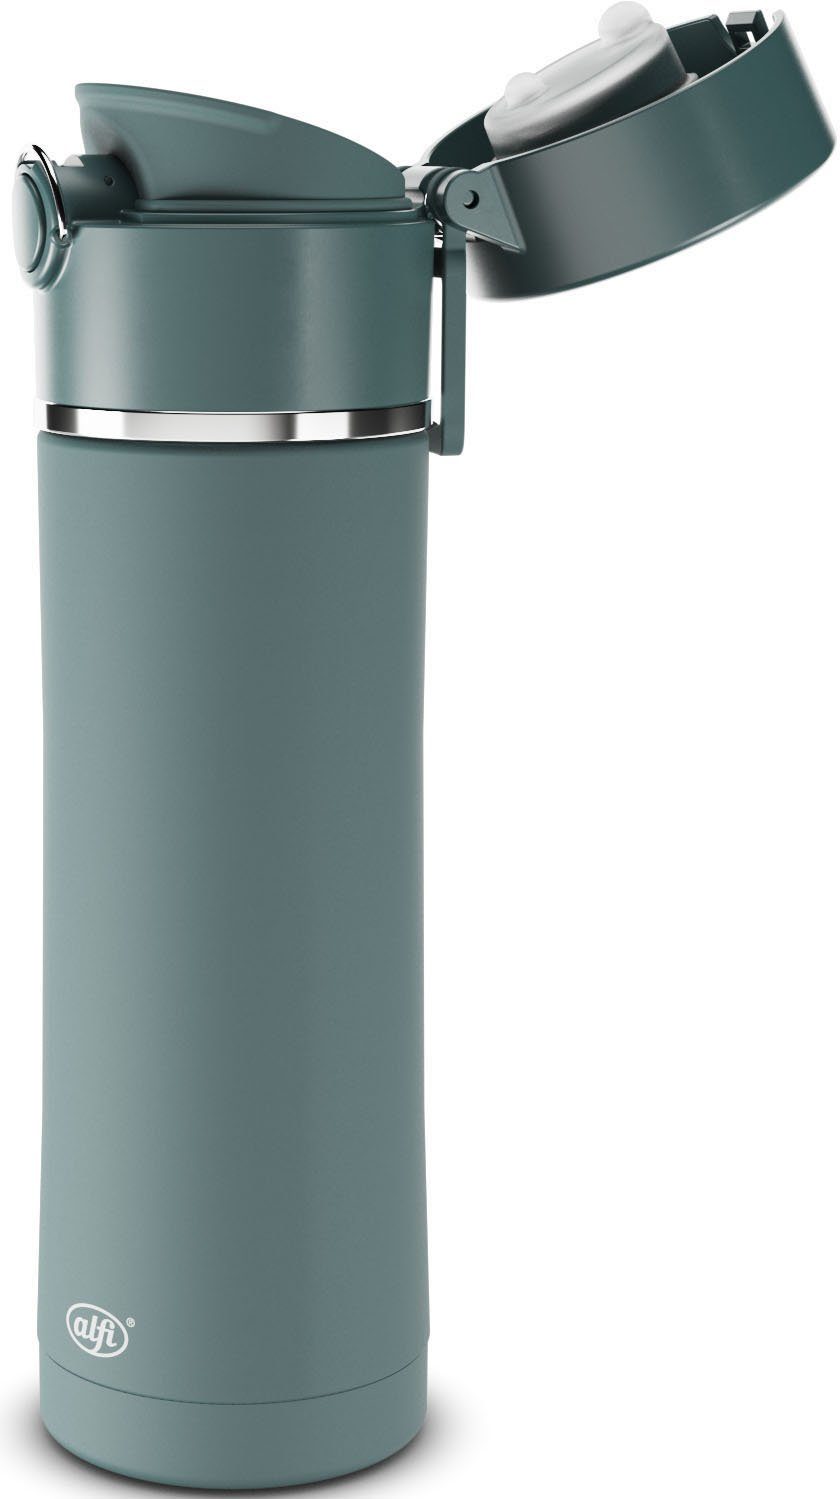 Alfi integriertem Thermoflasche Balance, Liter, 0,5 blau Teesieb mit